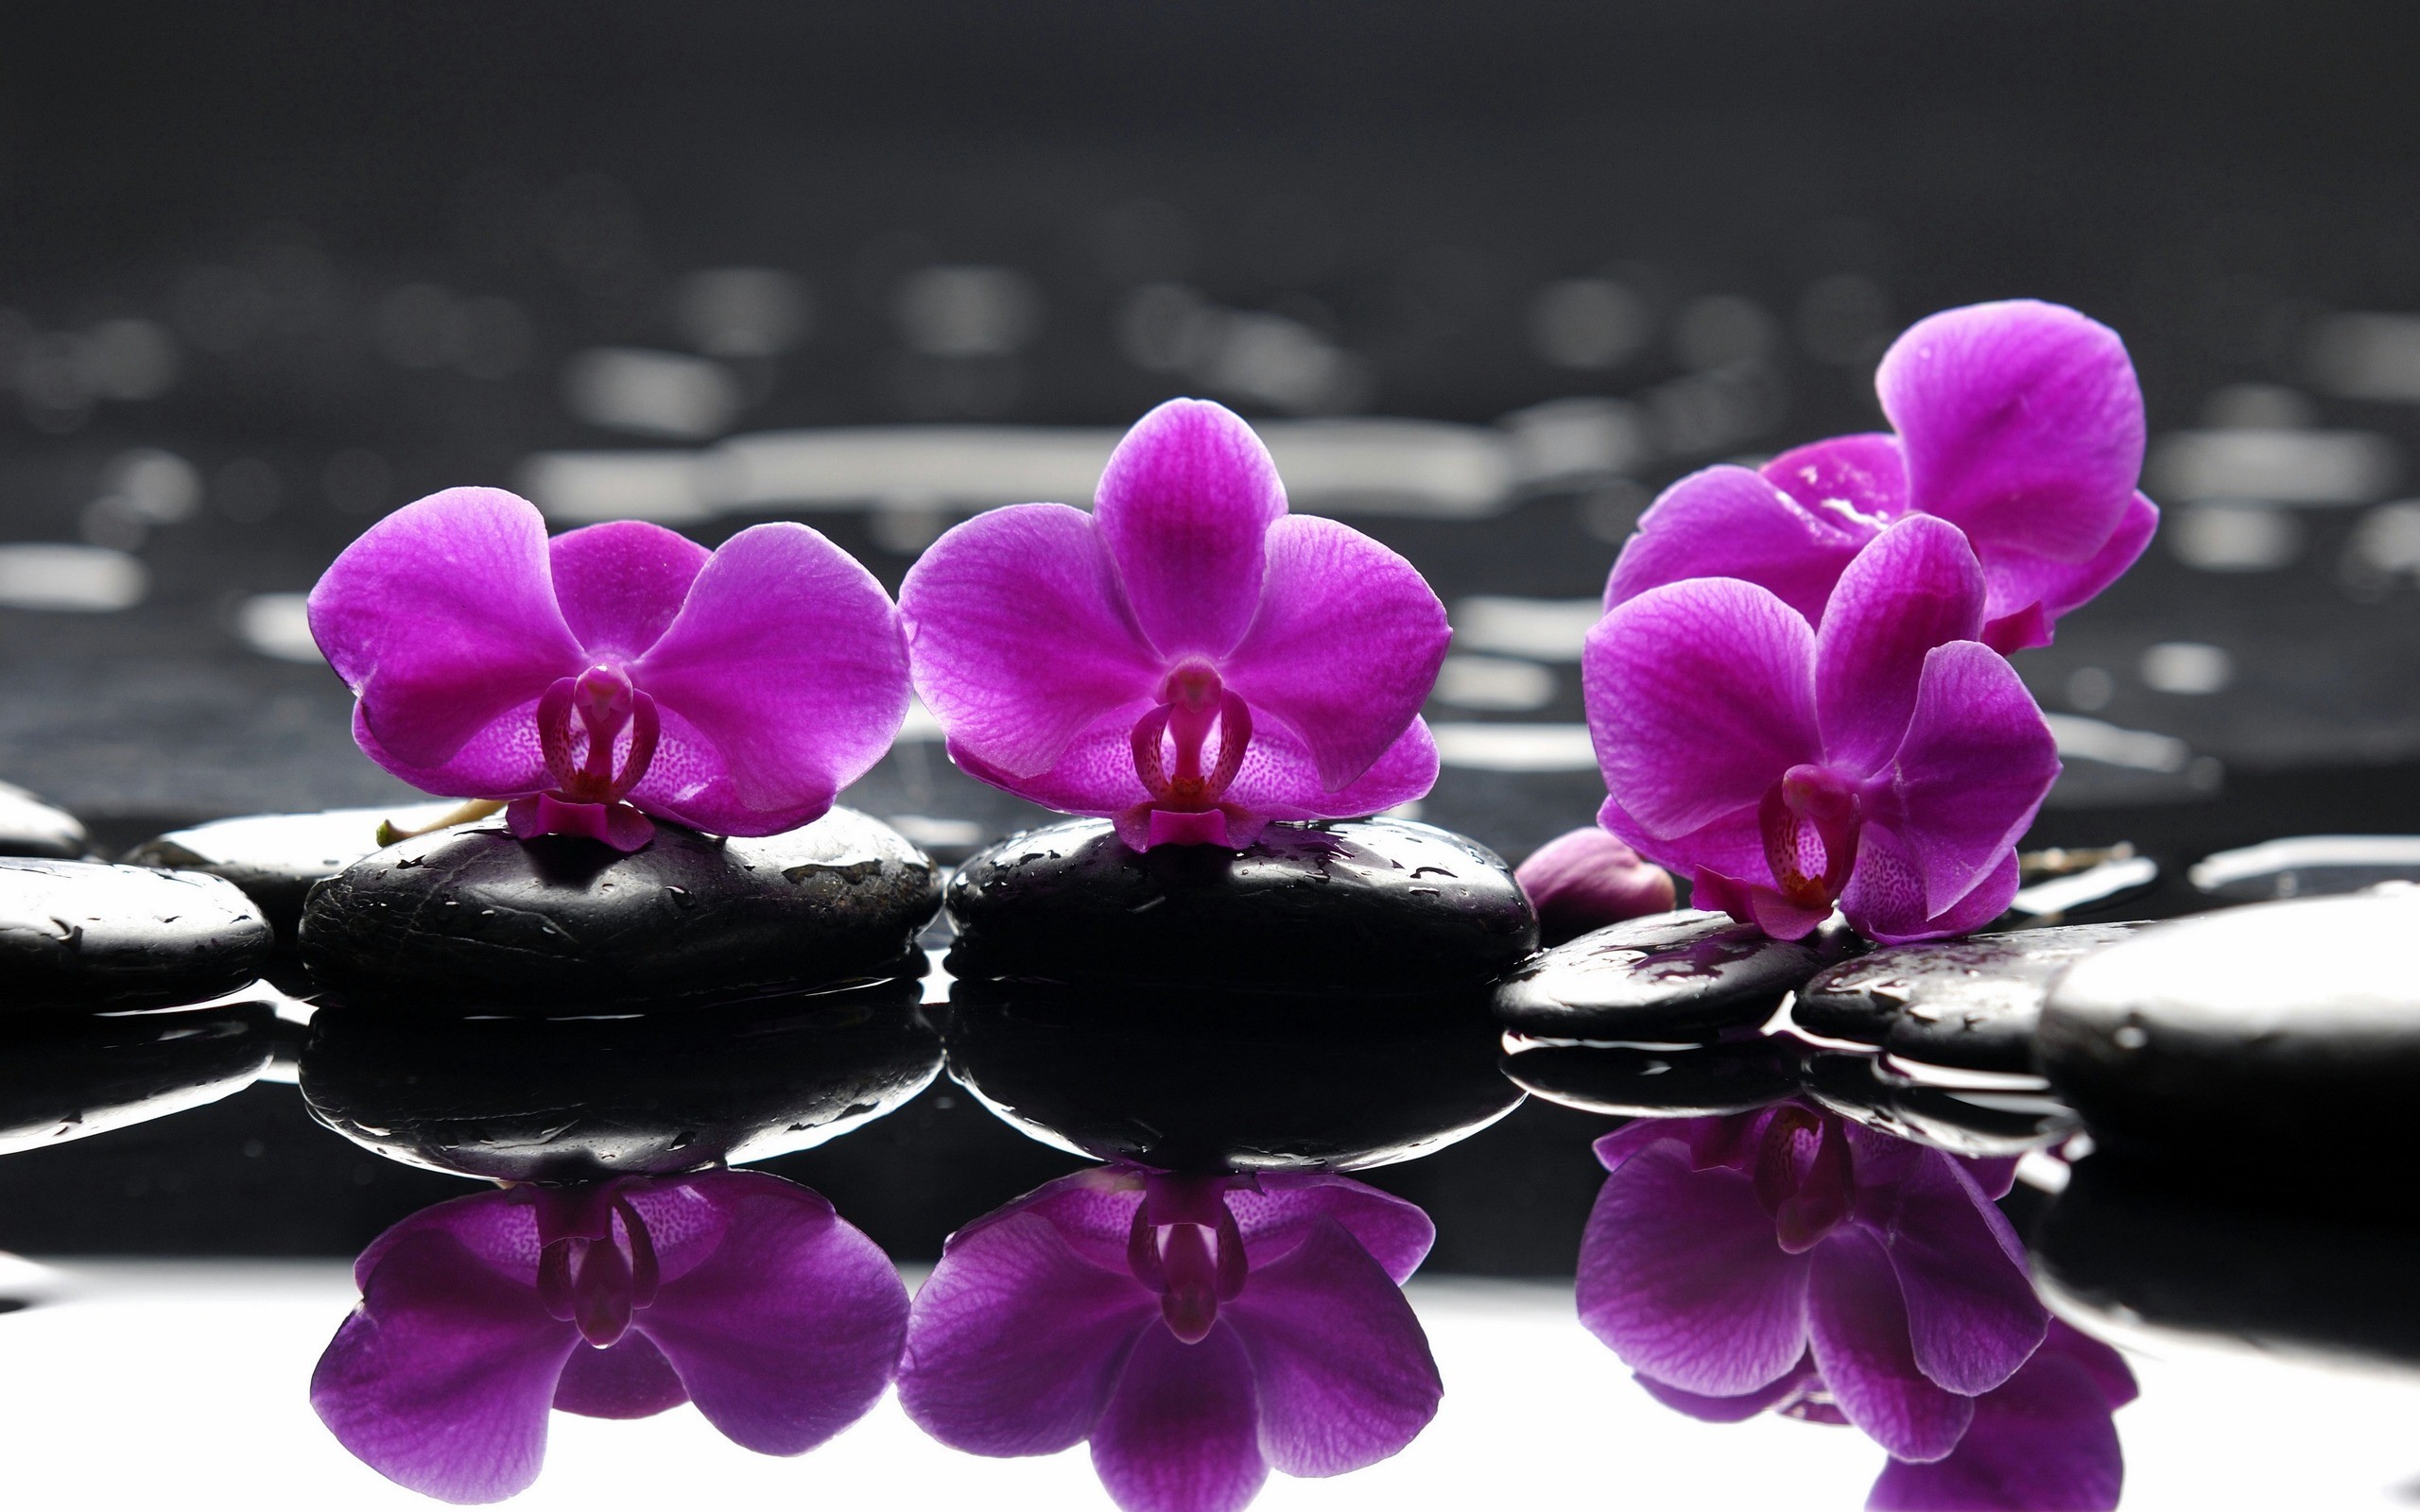 вода, цветы, выборочная раскраска, орхидеи, розовые цветы - обои на рабочий стол